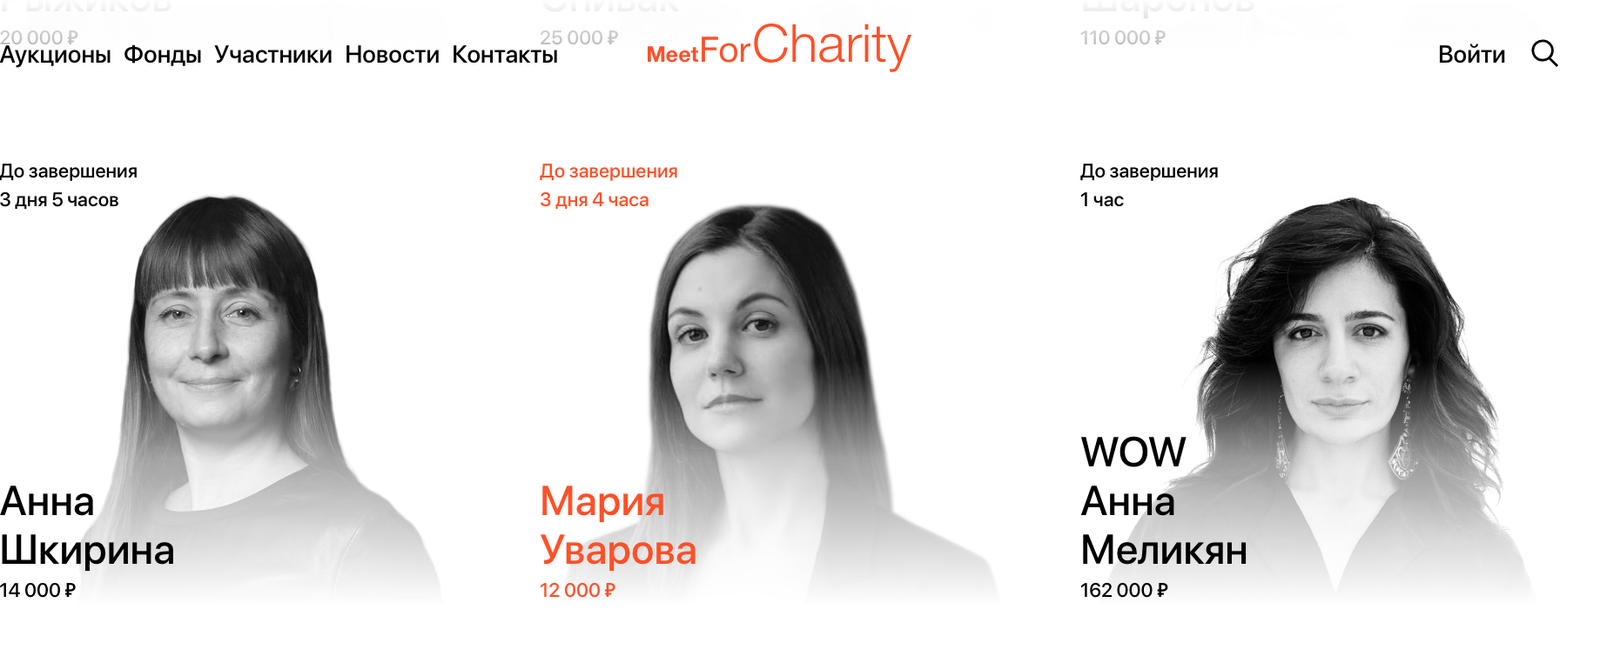 Стартап Ольги Флёр Meet for Charity как создавался благотворительный проект